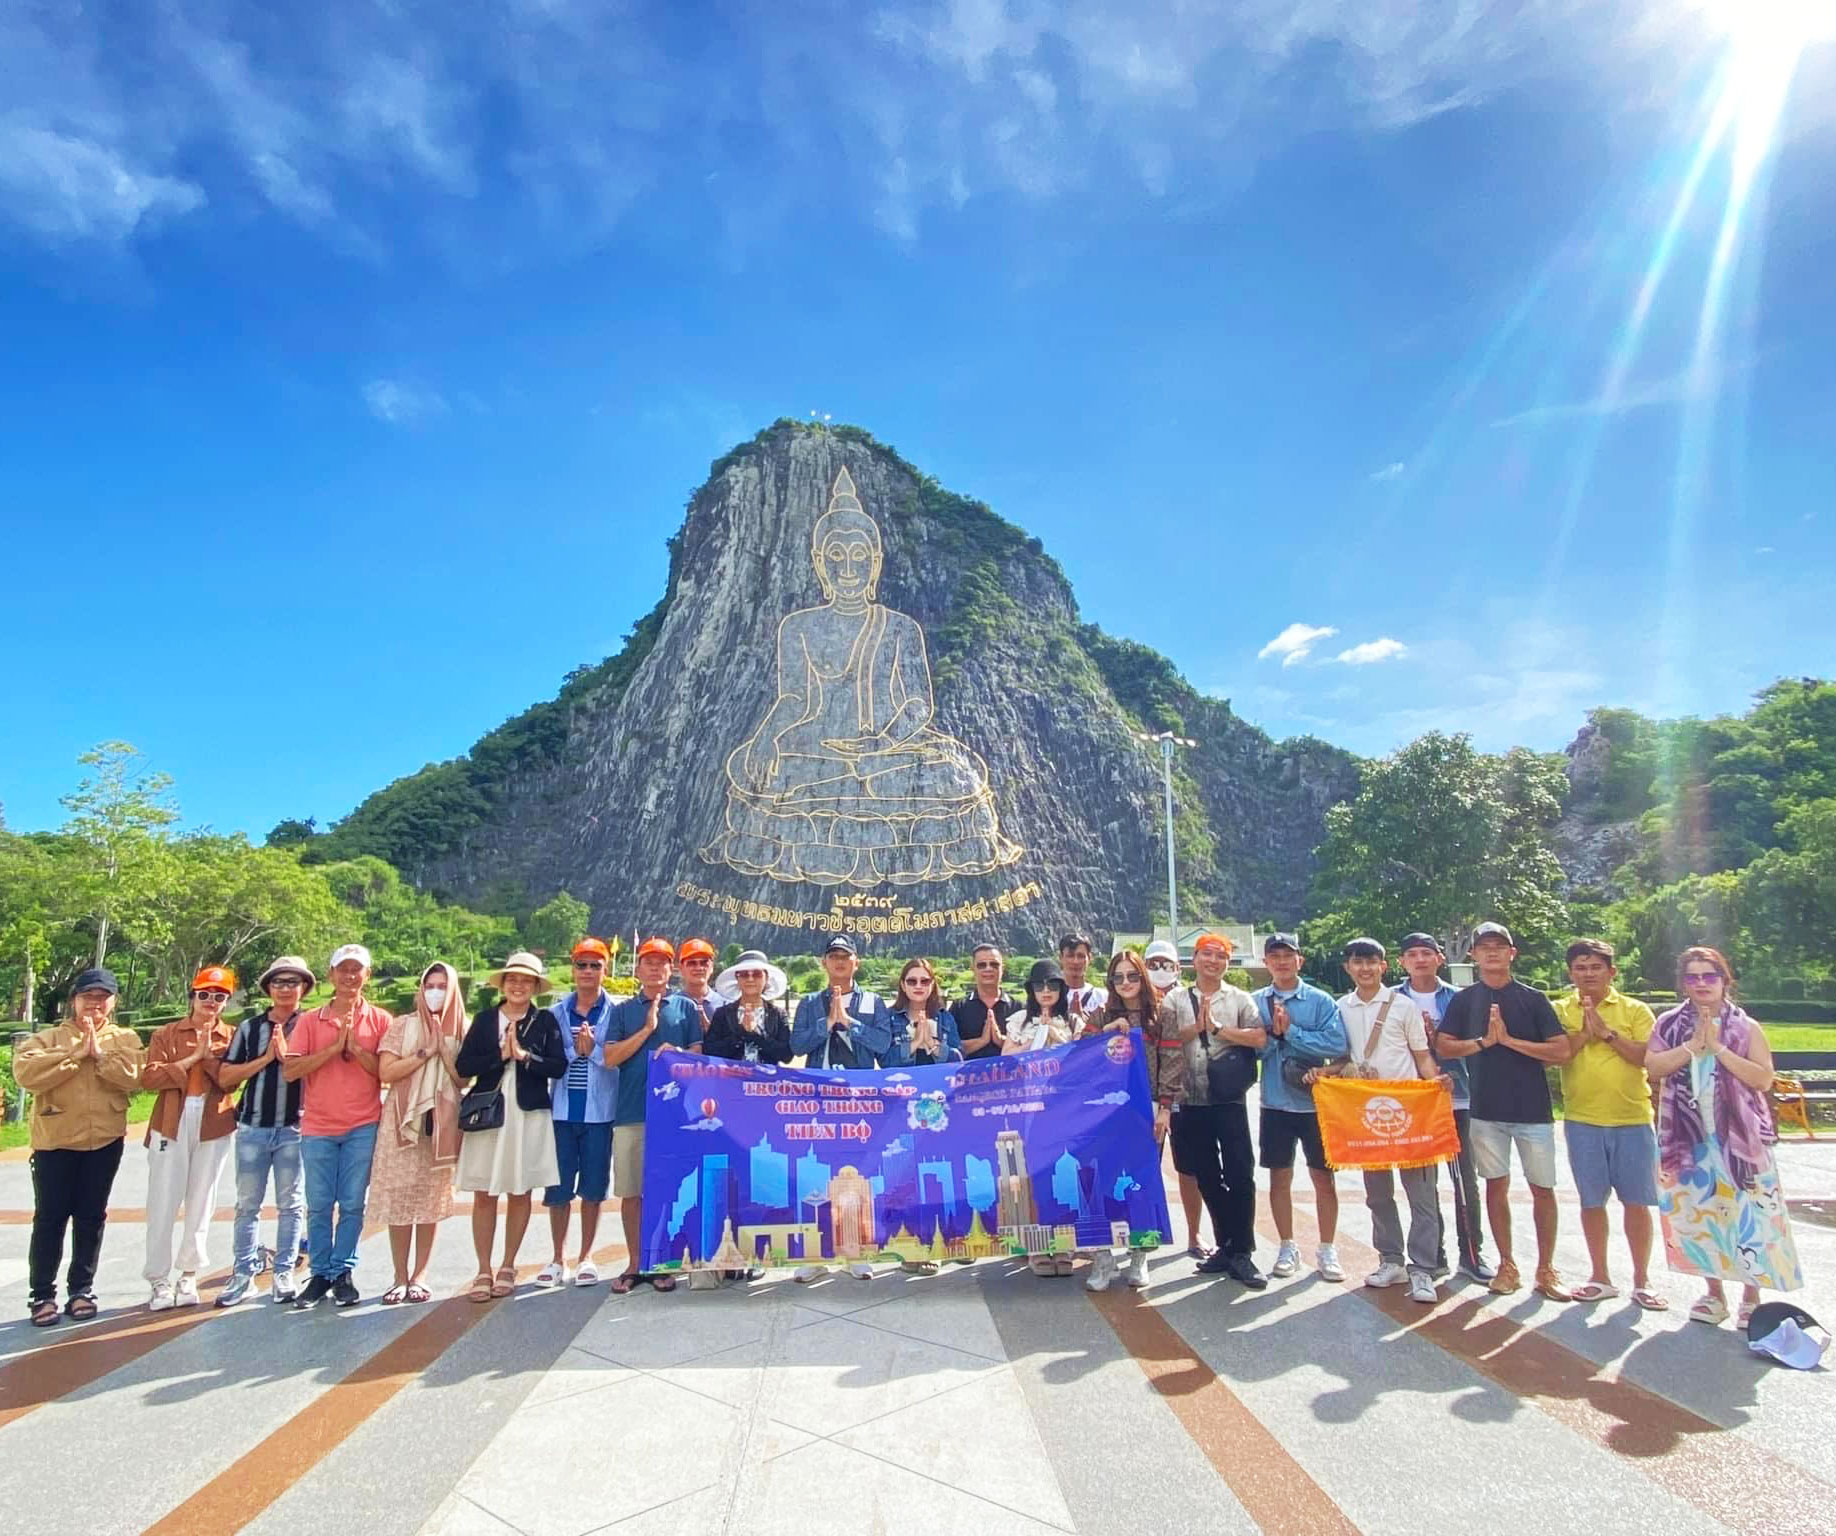 TOUR DU LỊCH THÁI LAN 5 NGÀY 4 ĐÊM BAY SÁNG Tour Du Lịch Thái Lan-1